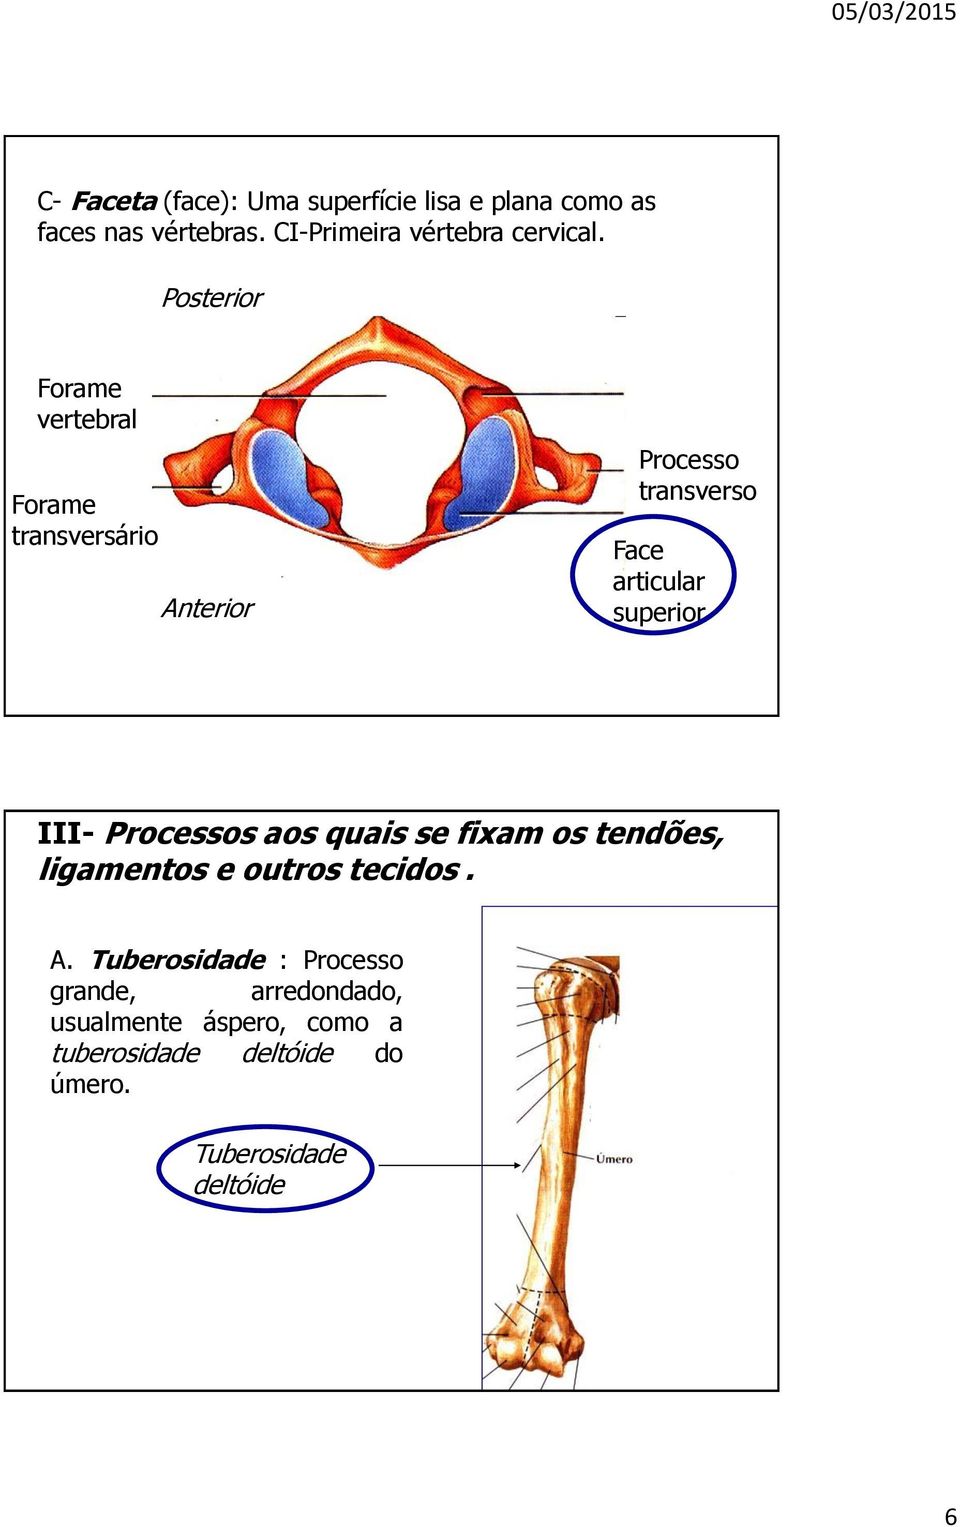 Posterior Forame vertebral Forame transversário Anterior Processo transverso Face articular superior